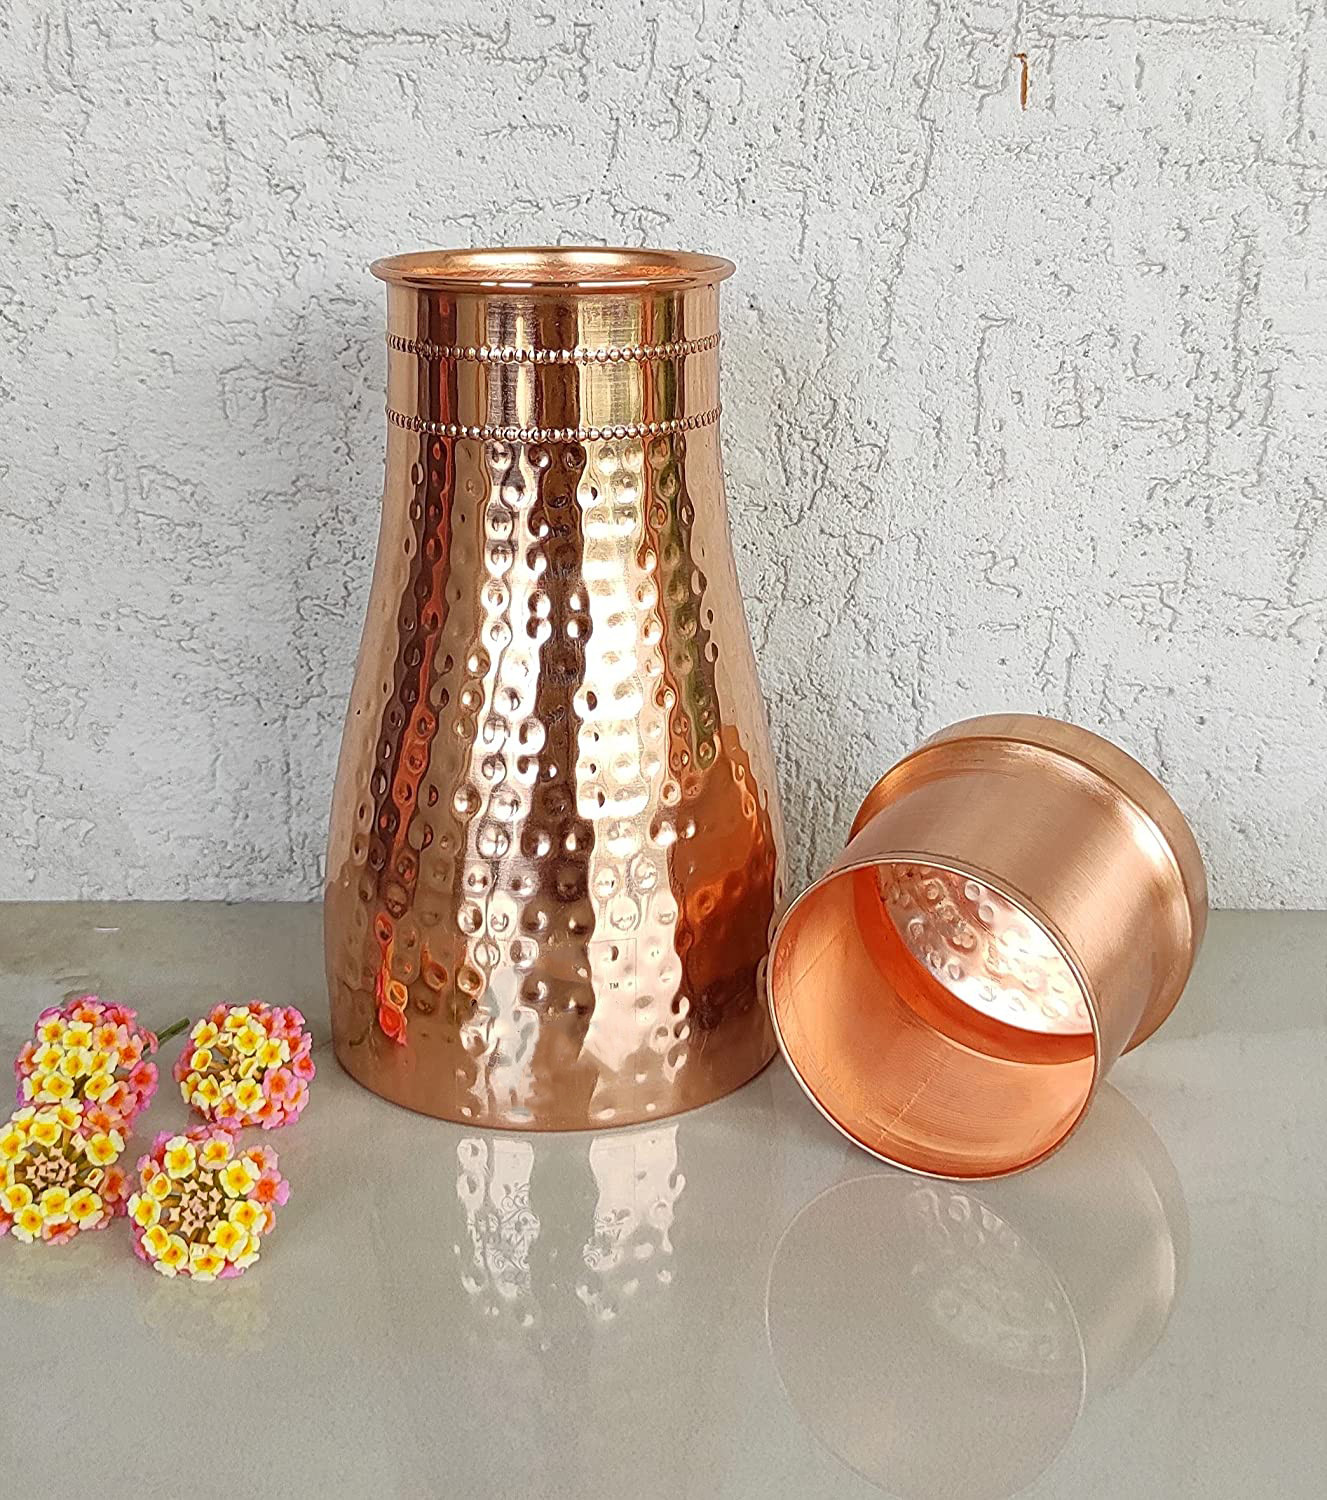 Kuber industries Hammered Copper Bedroom Jar|Bedside Water Bottle with Inbuilt Glass, 1100 ml (Gold)